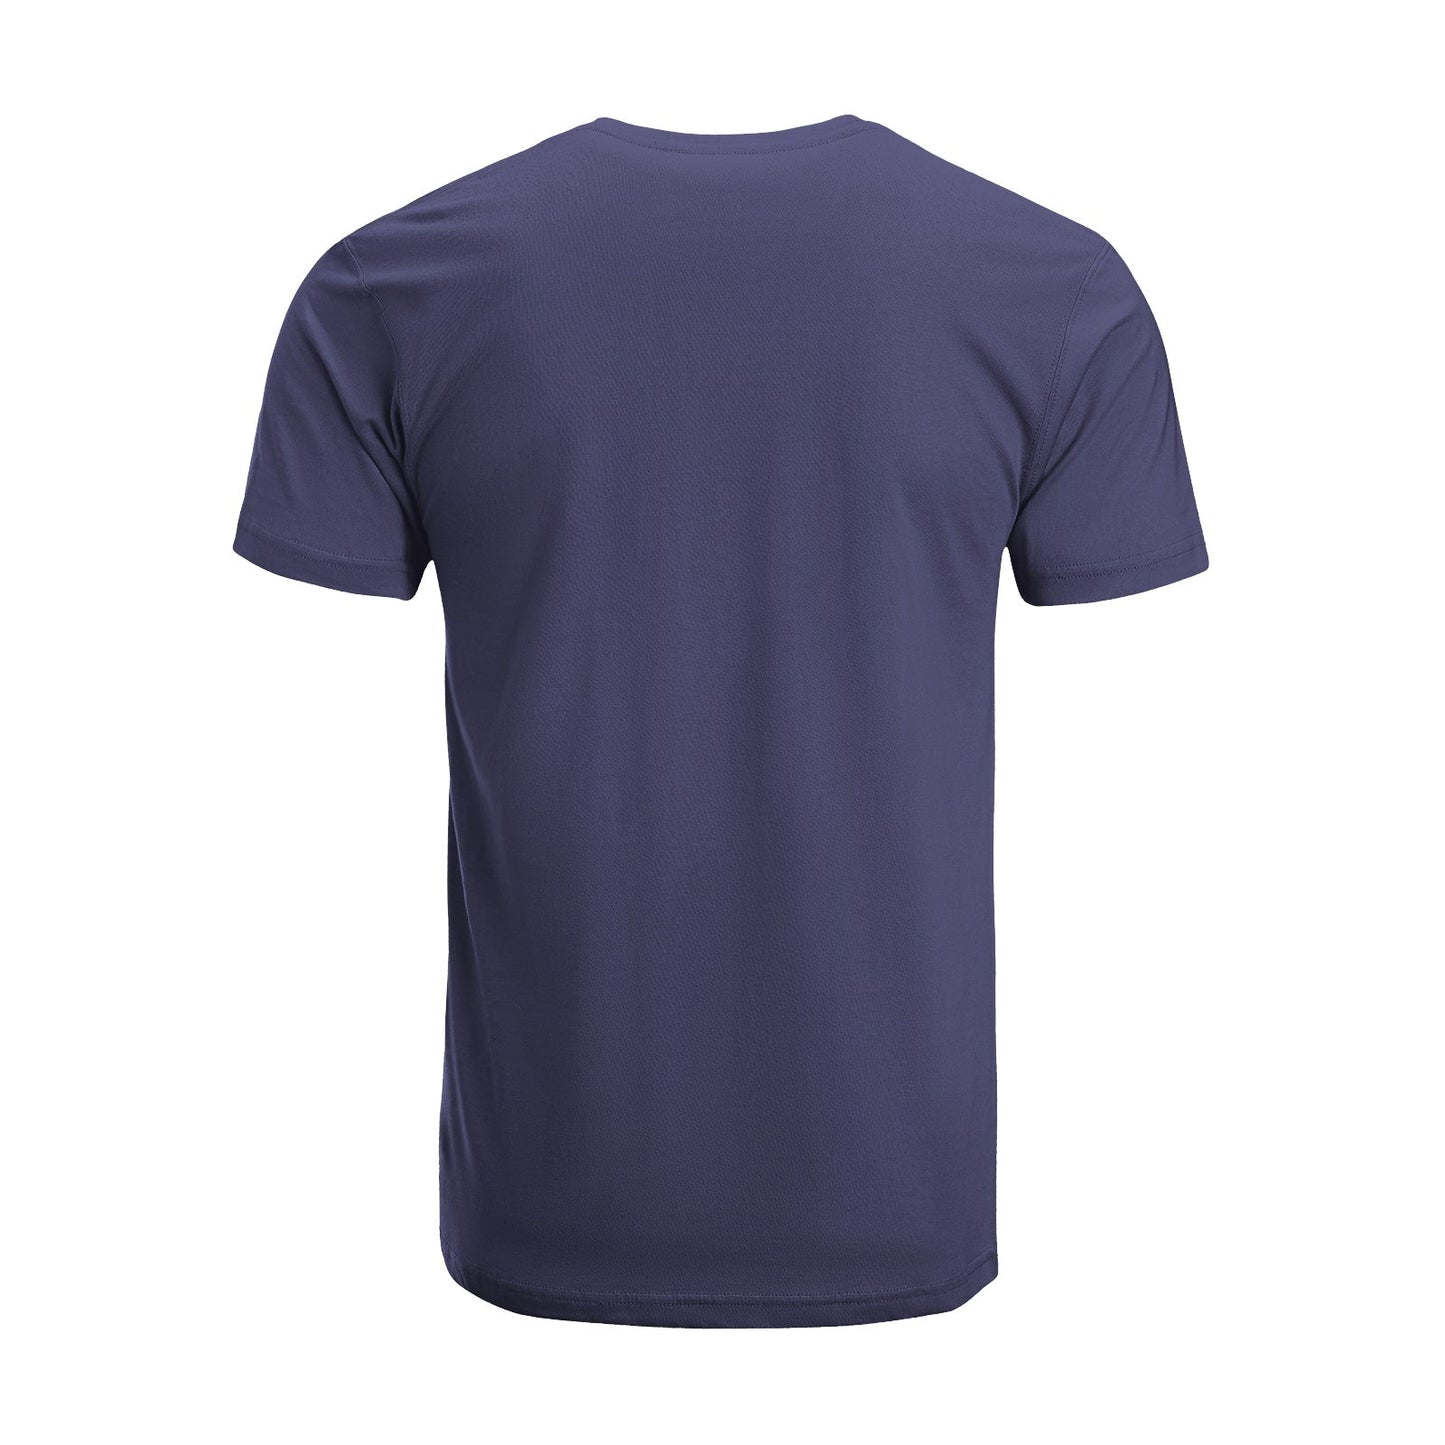 Unisex Short Sleeve Crew Neck Cotton Jersey T-Shirt TRUCK 18